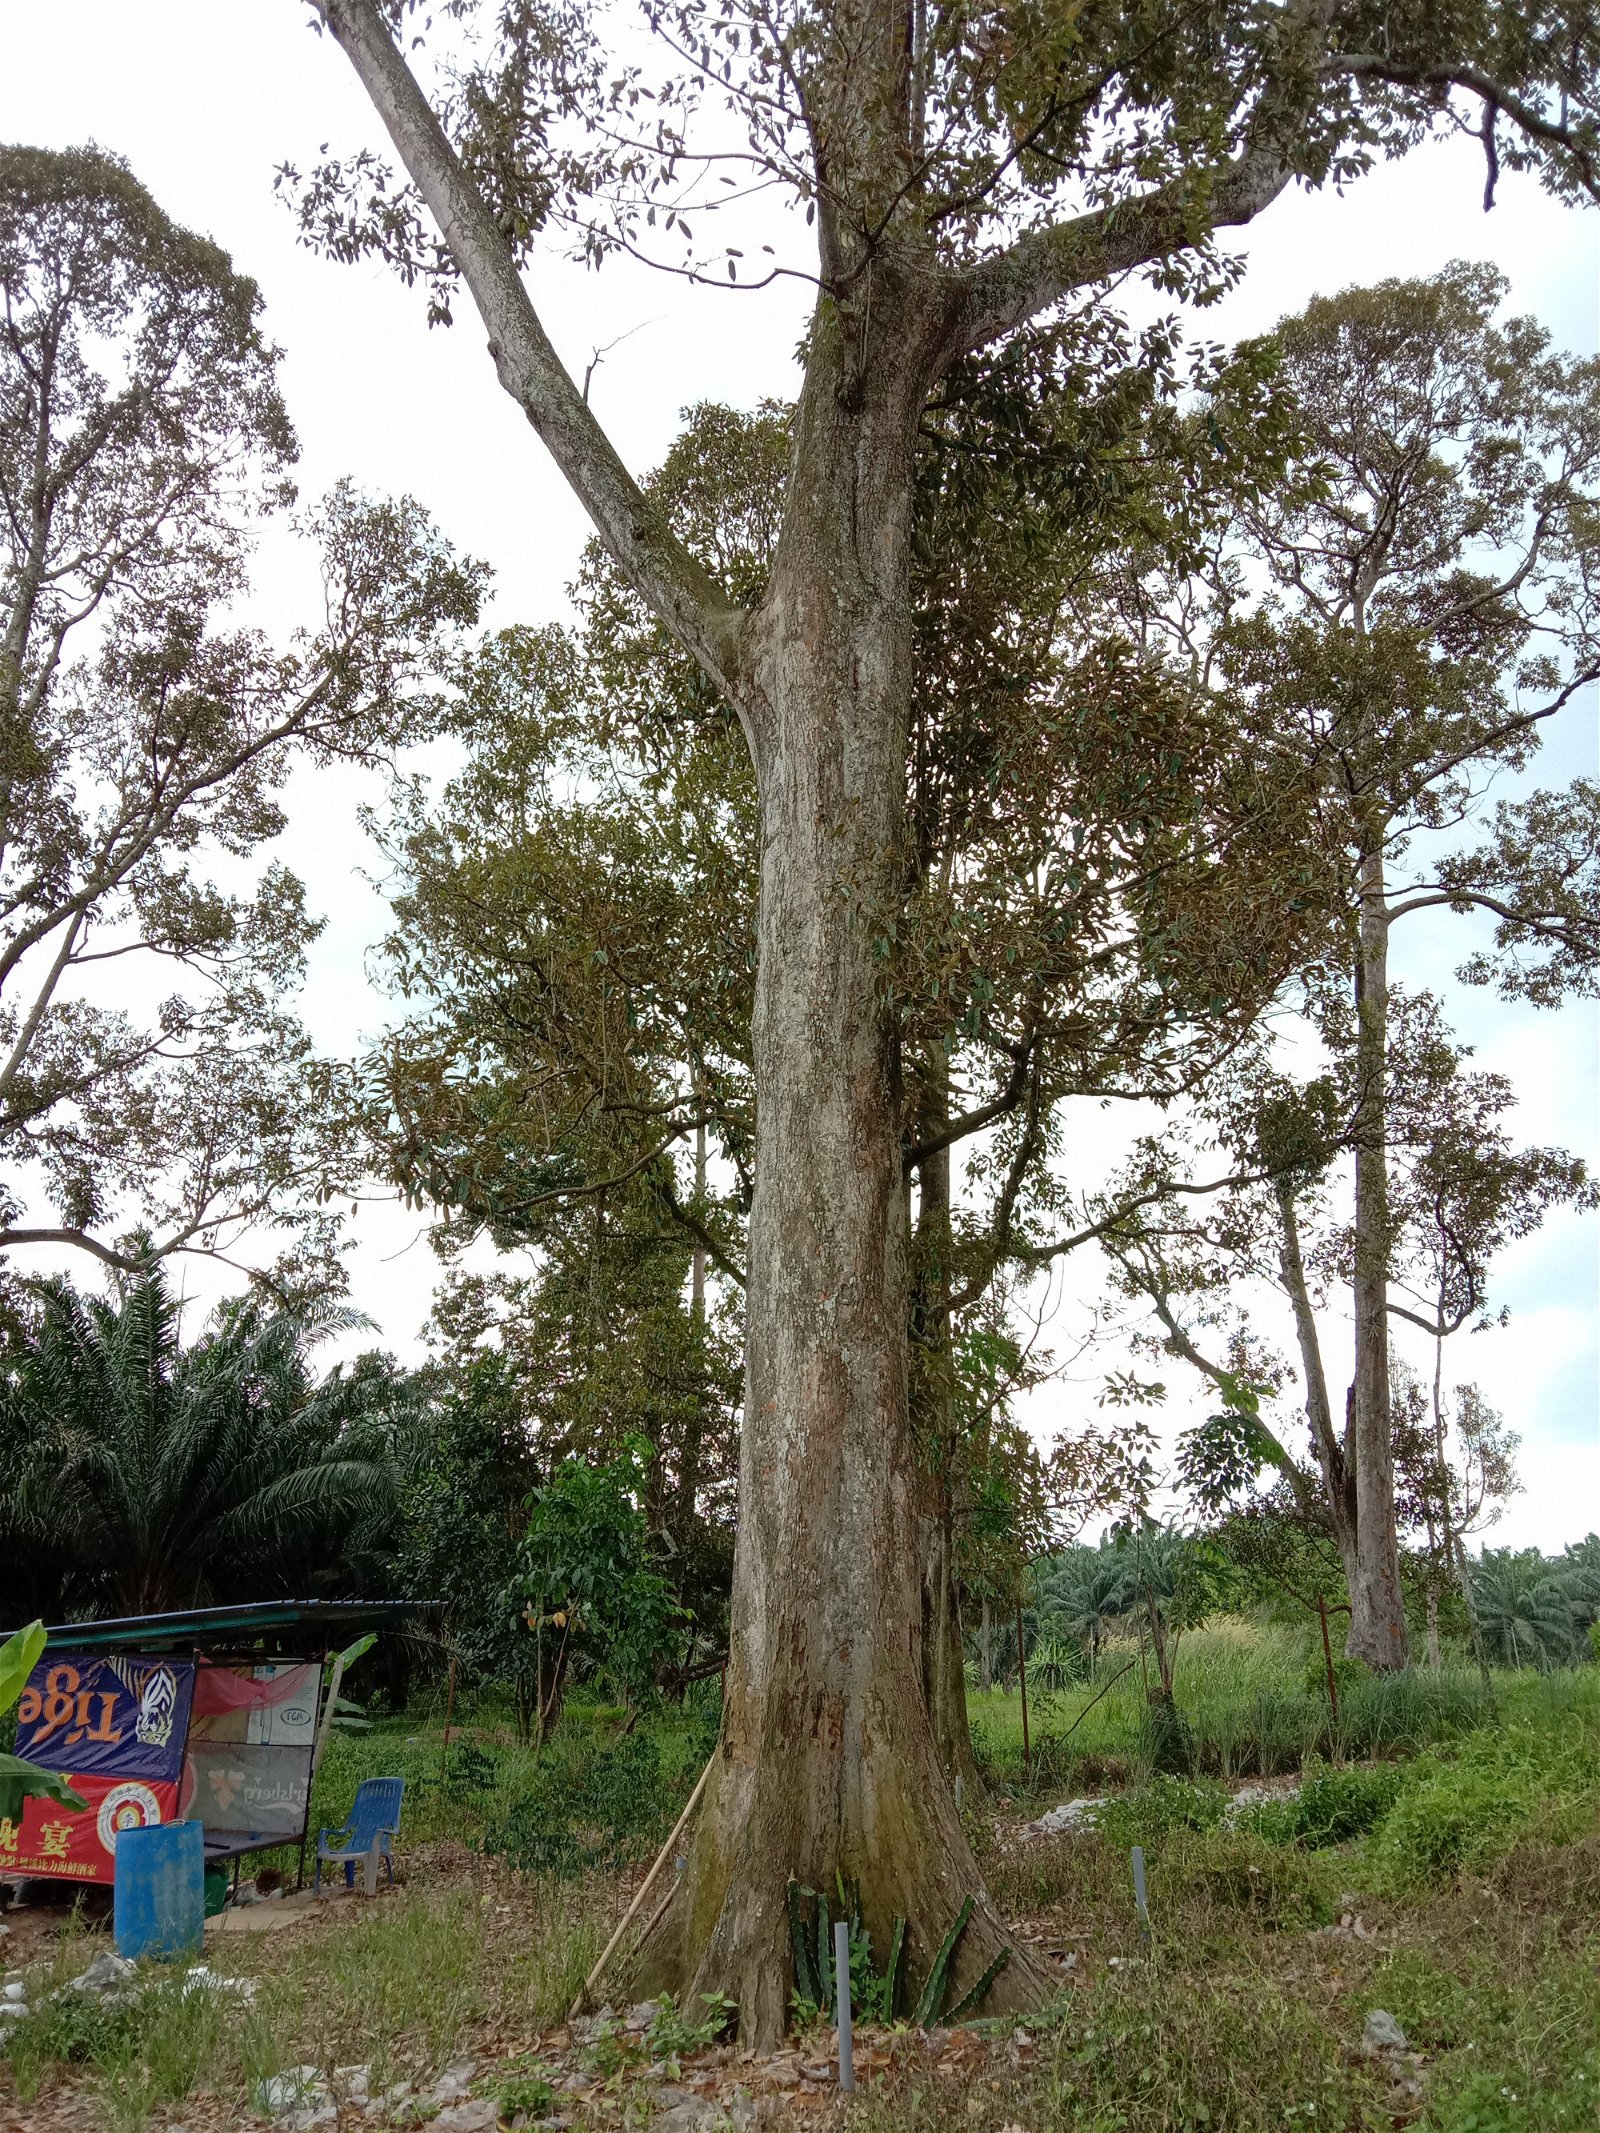 加拜榴梿树最高可以达到100公尺。